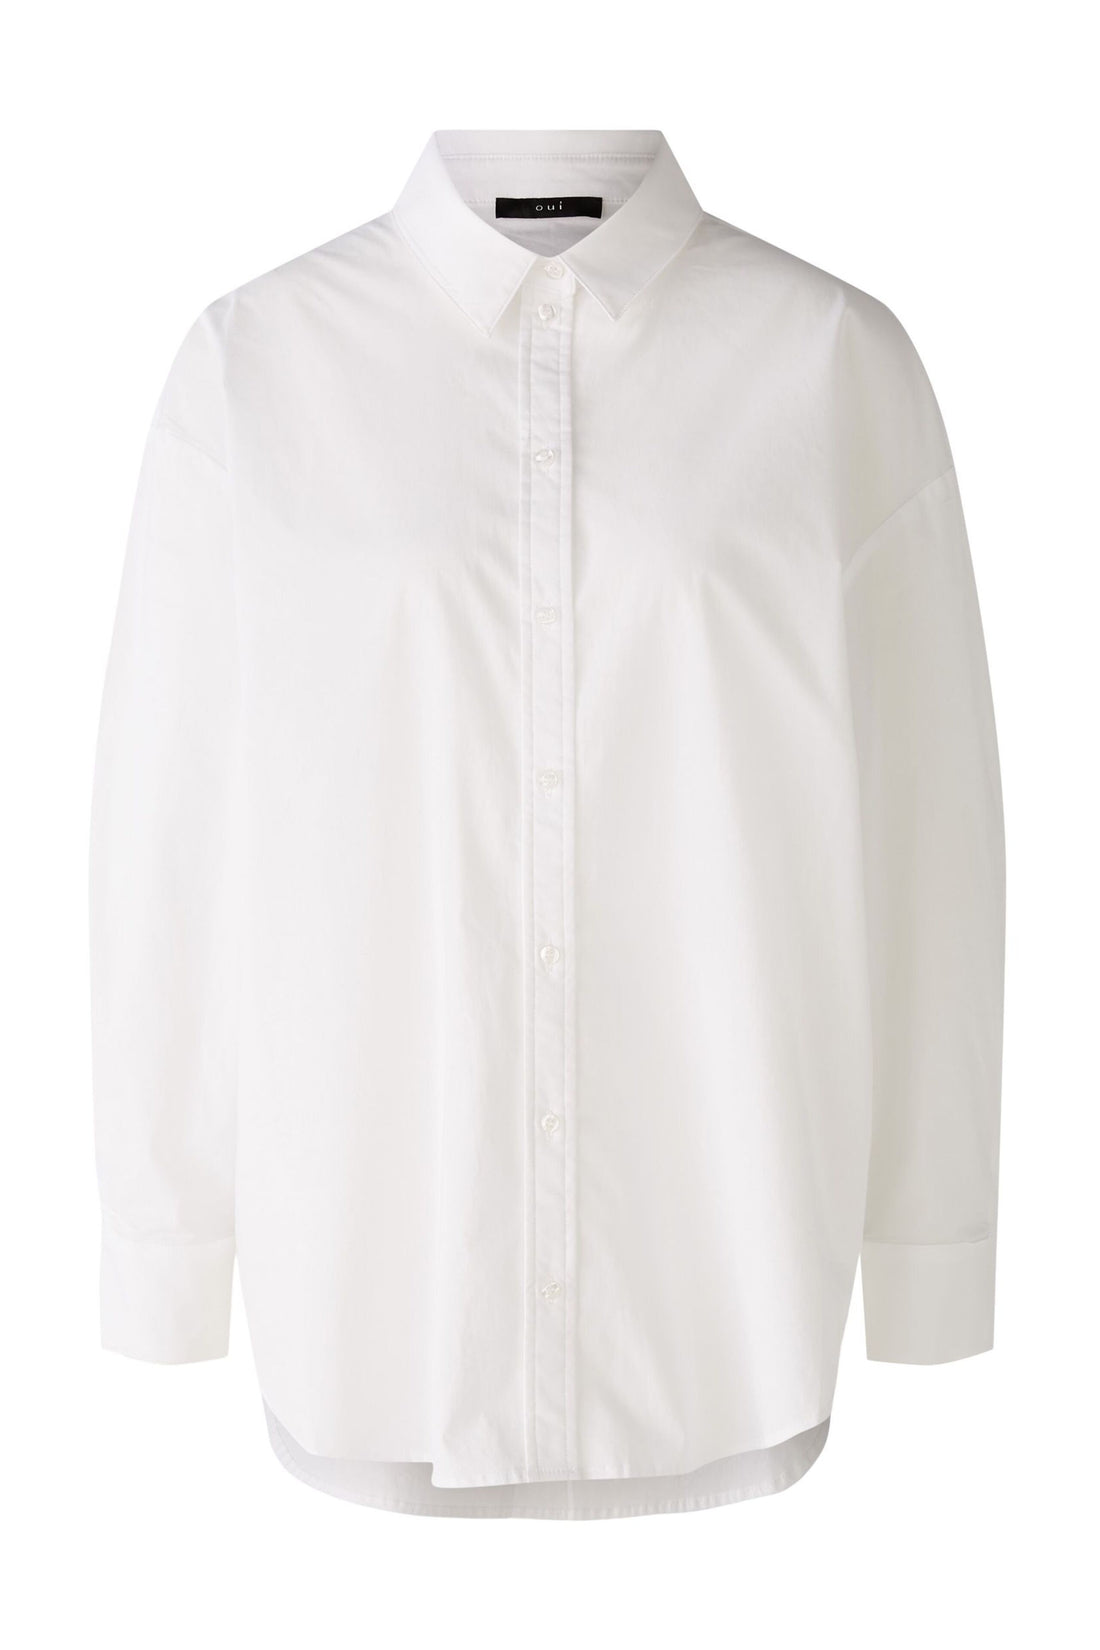 White Button Down Shirt_88343_1002_01